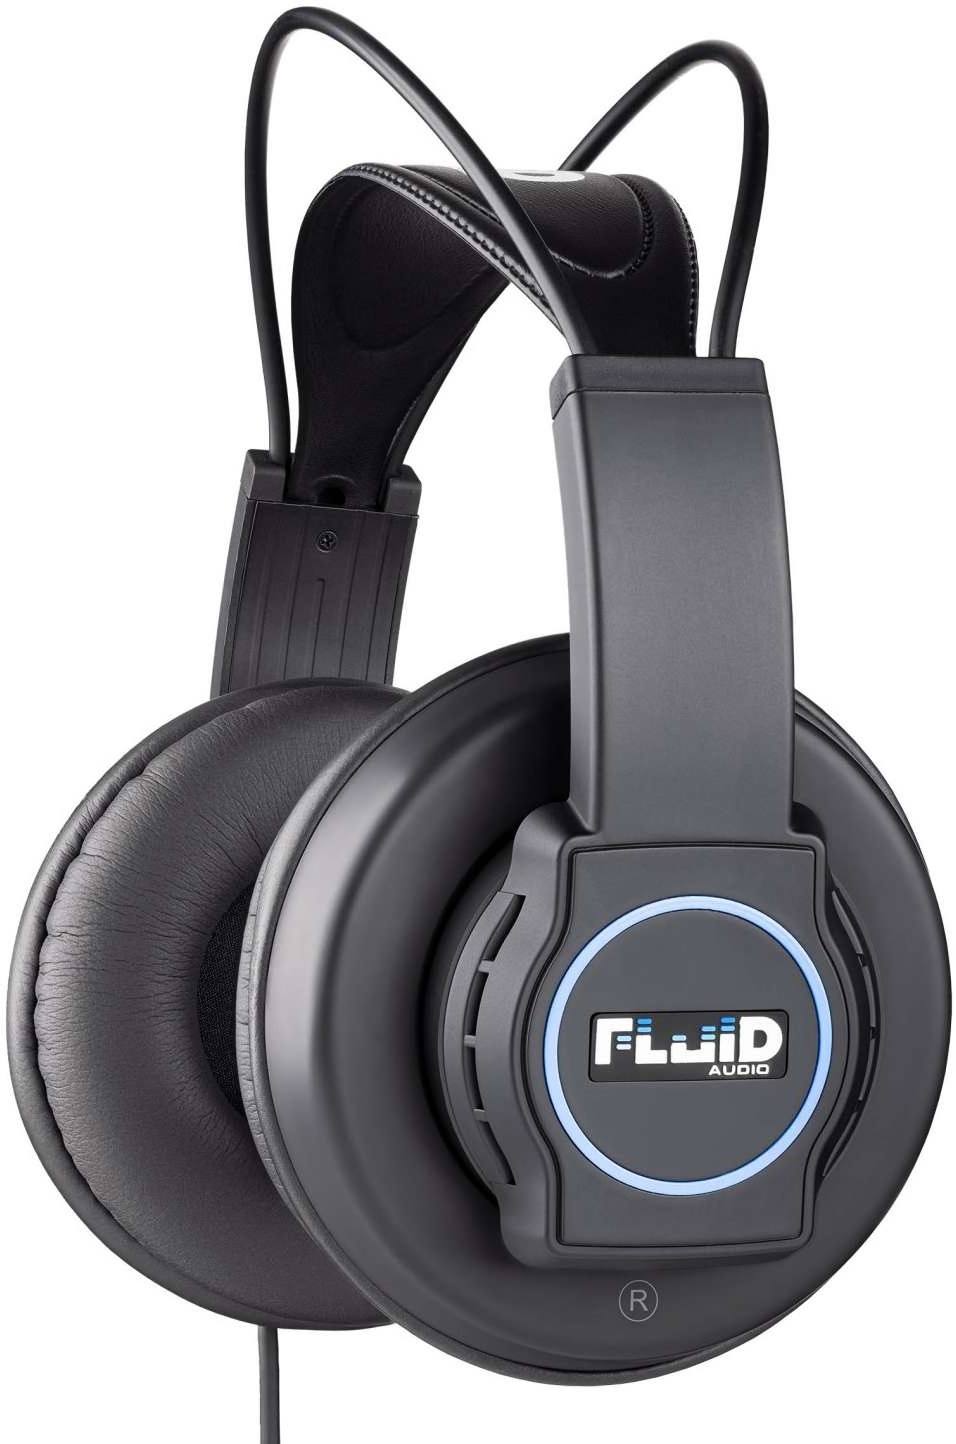 Fluid Audio Focus - Closed headset - Main picture